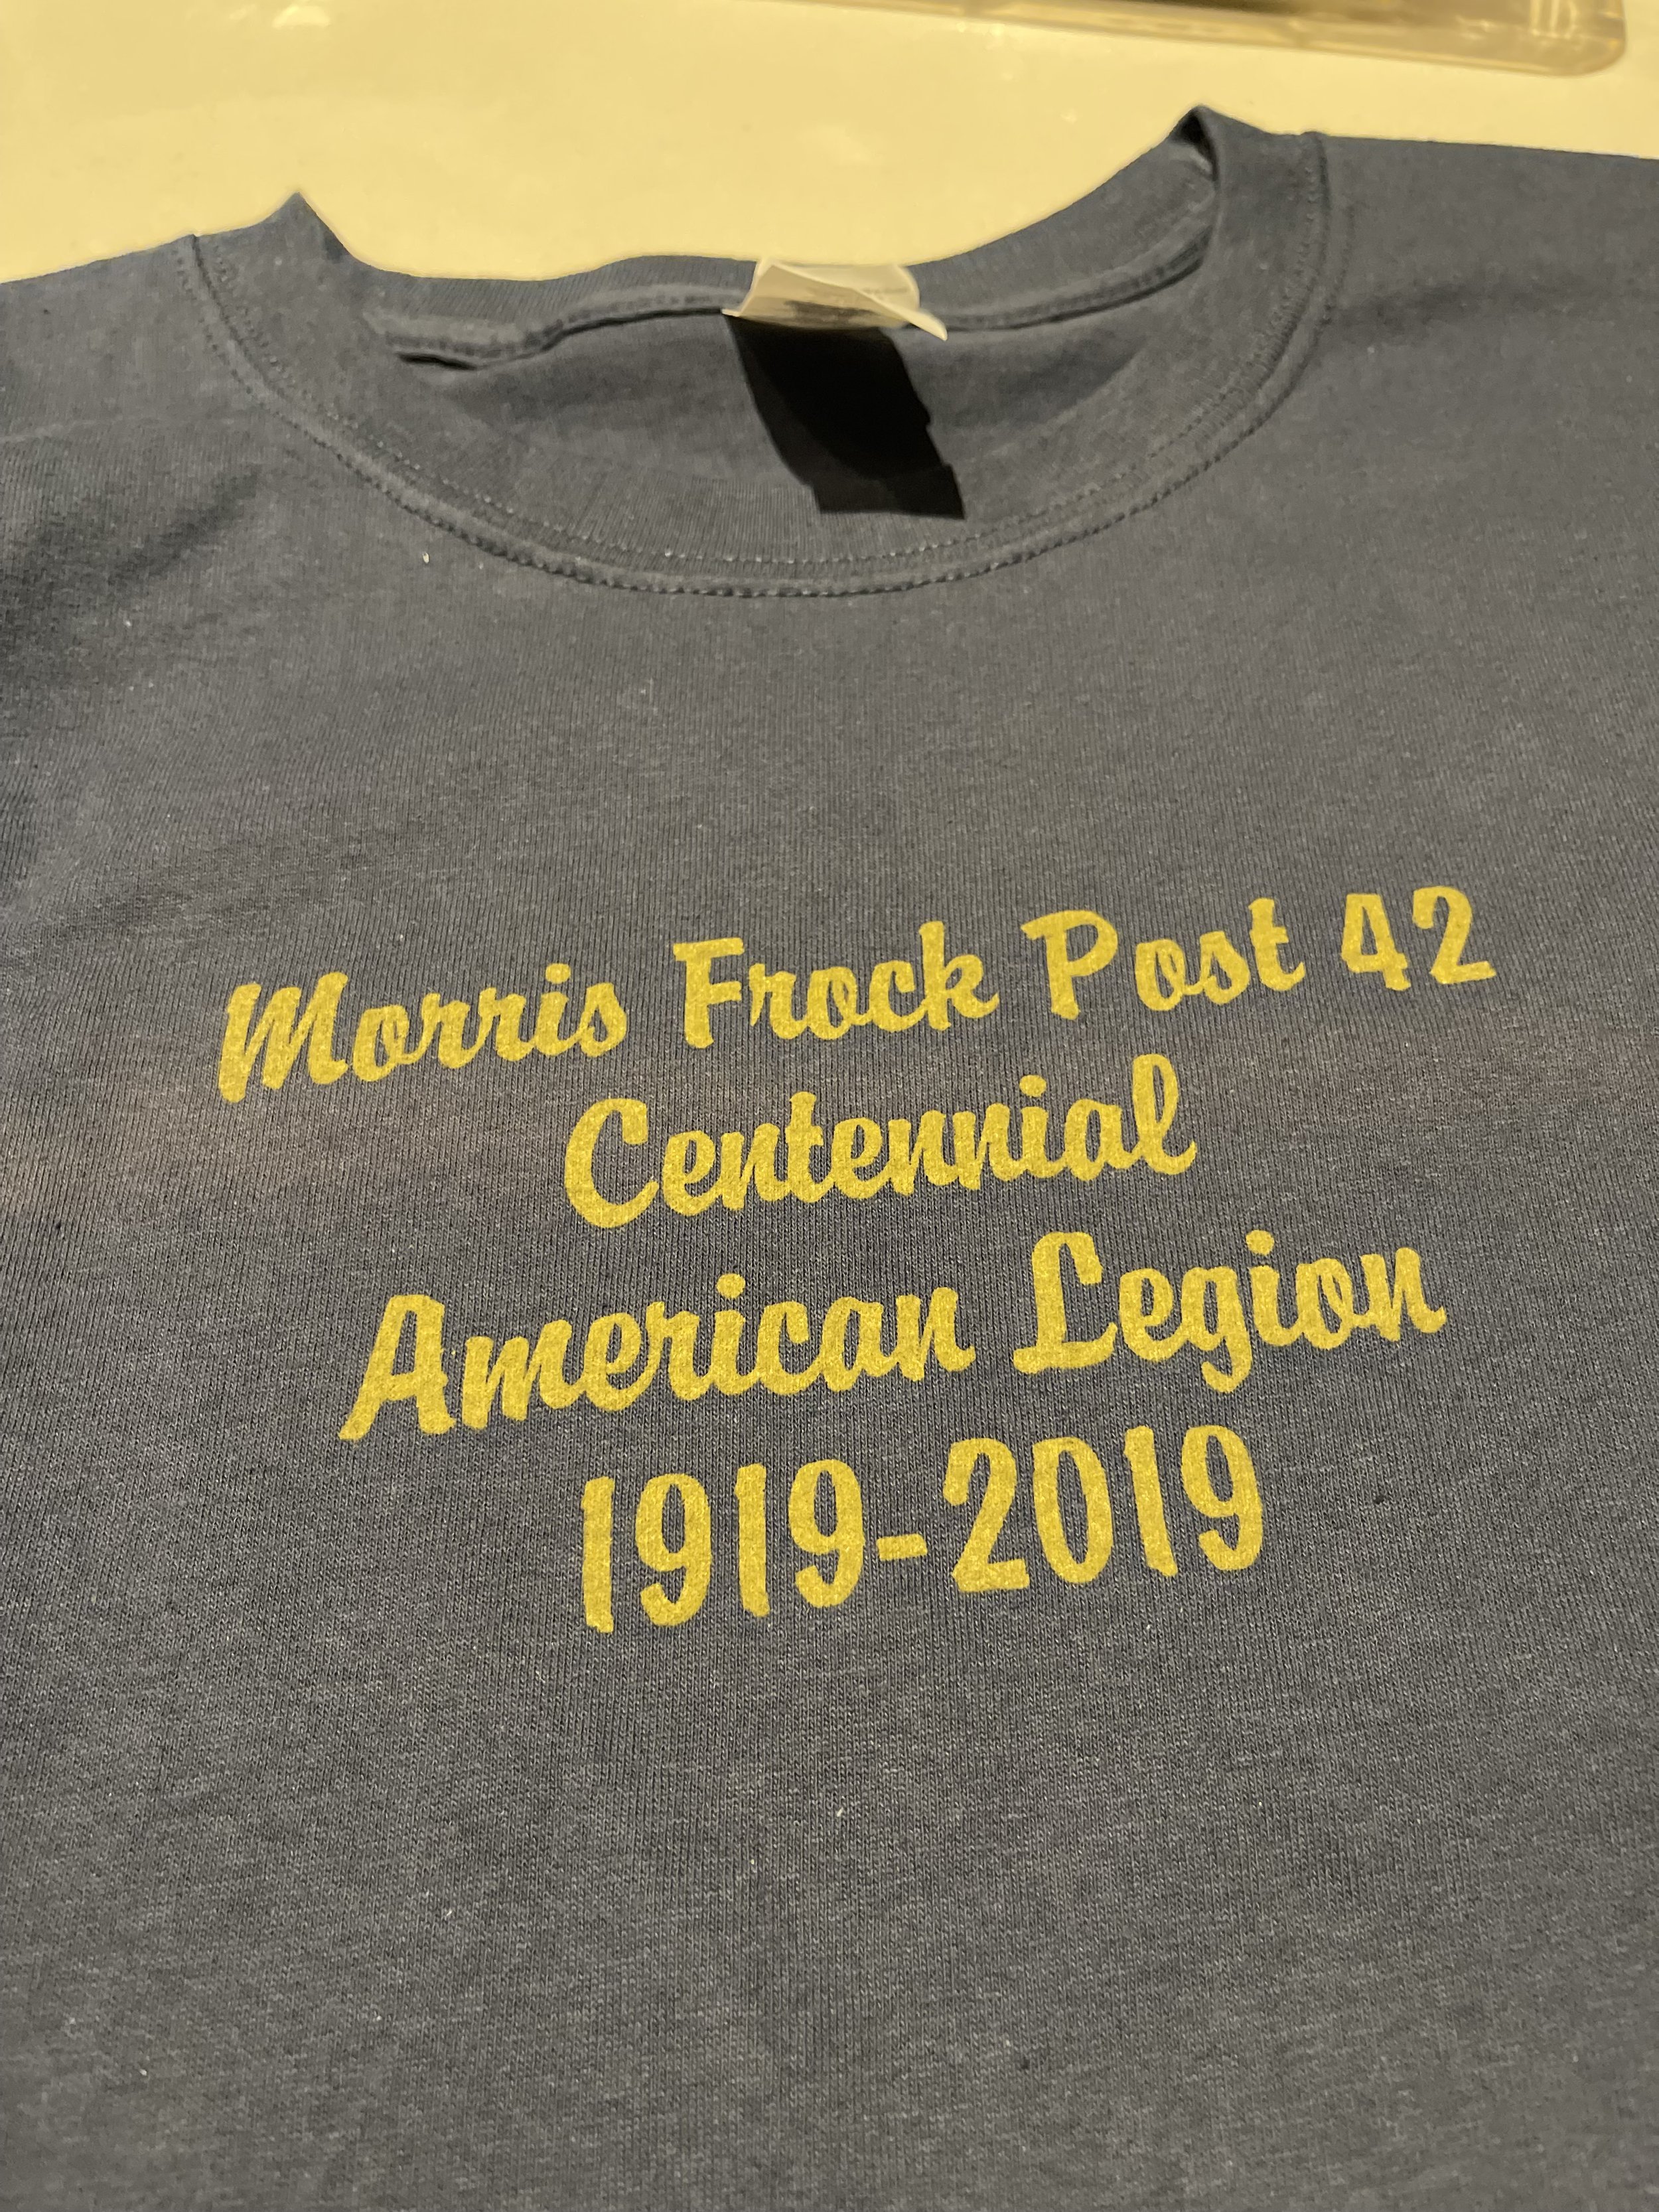 Morris Frock American Legion_Centennial T-shirt.jpg